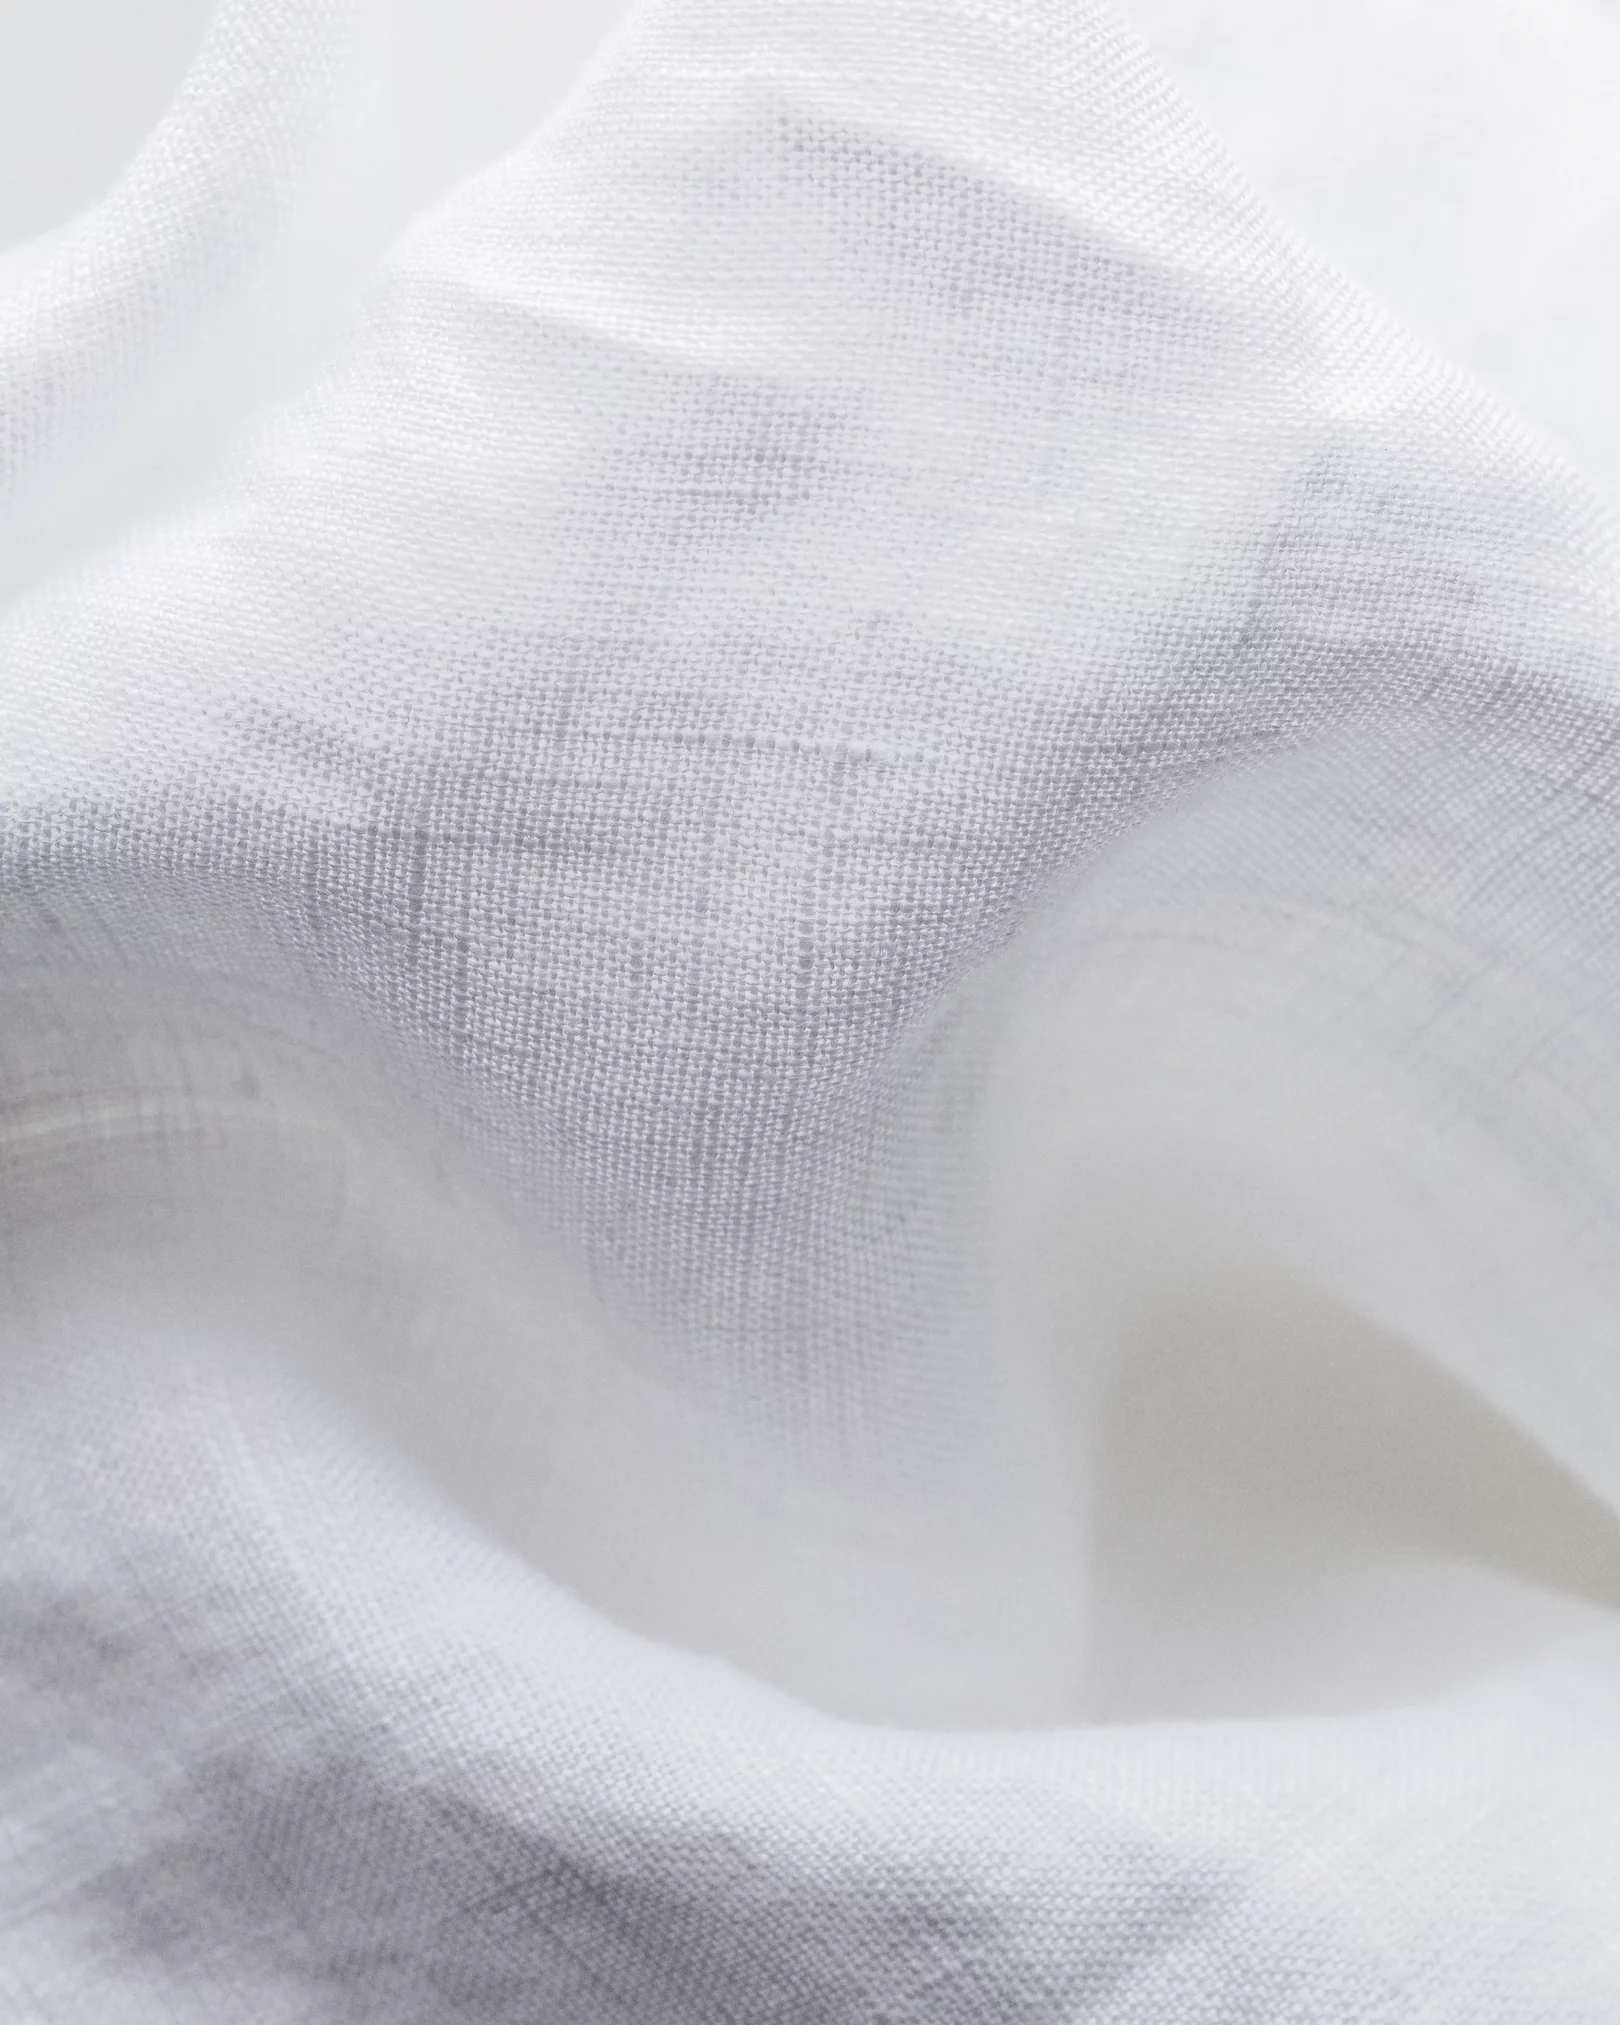 Eton - white linen shirt short sleeve